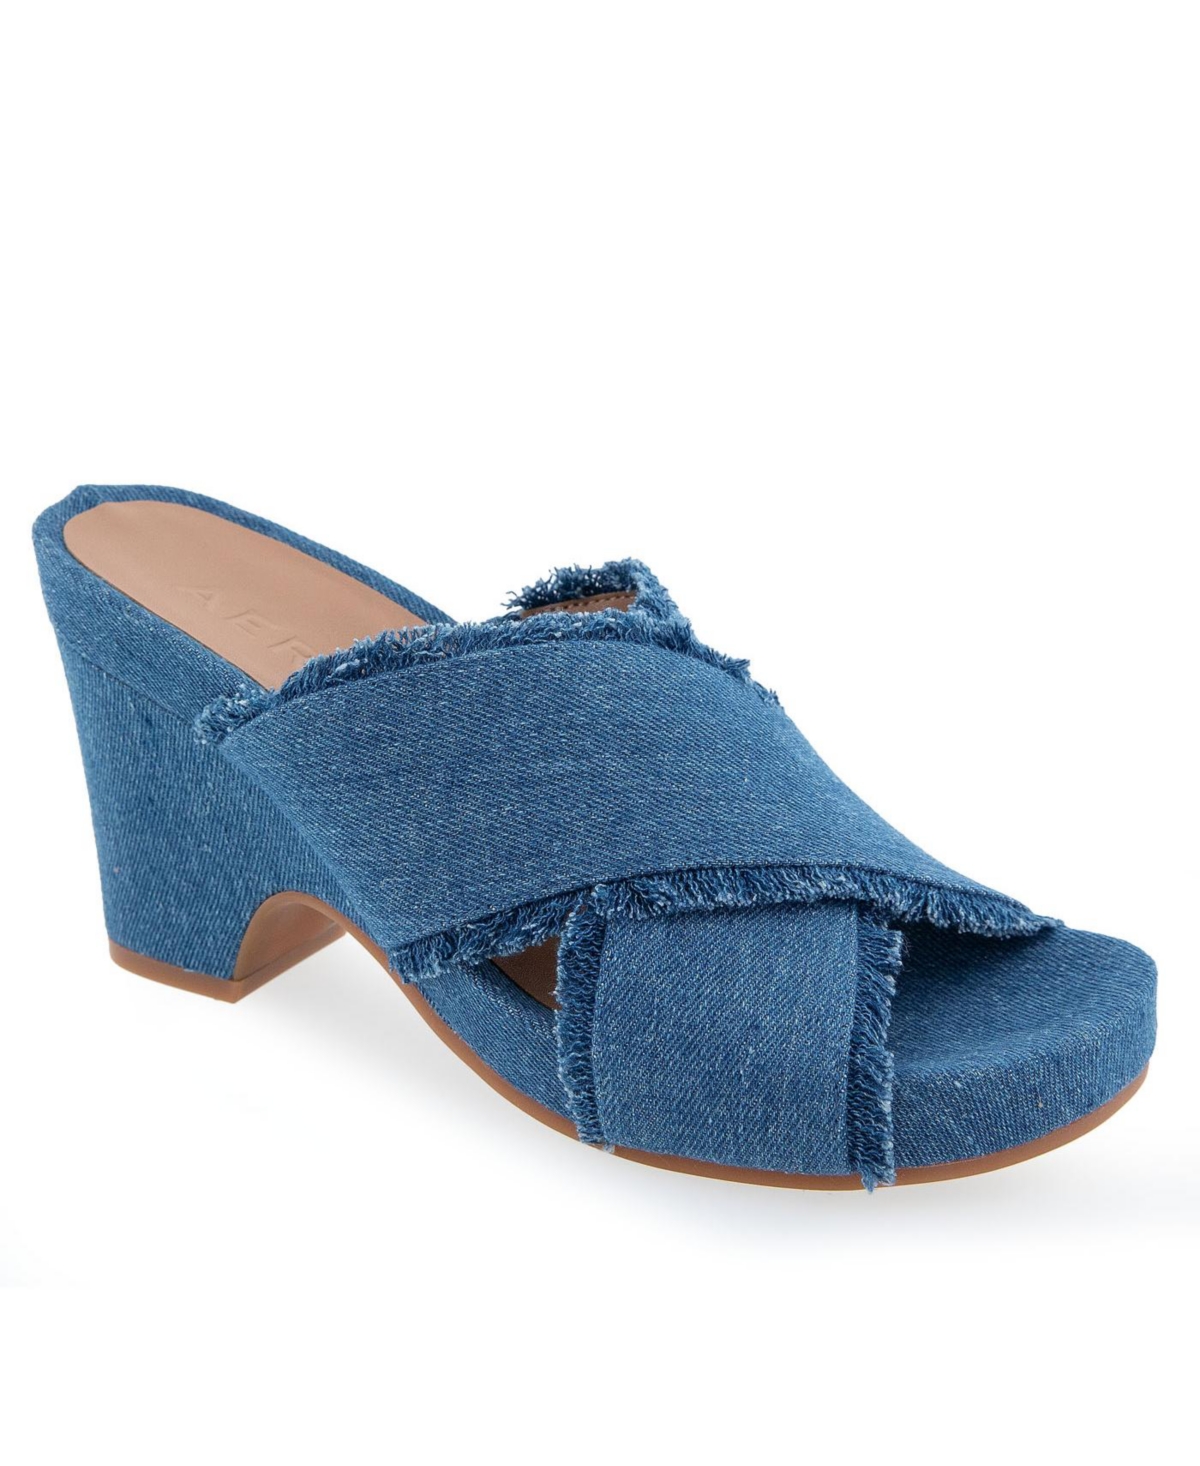 Shop Aerosoles Women's Madina Open Toe Wedge Sandals In Medium Blue Denim